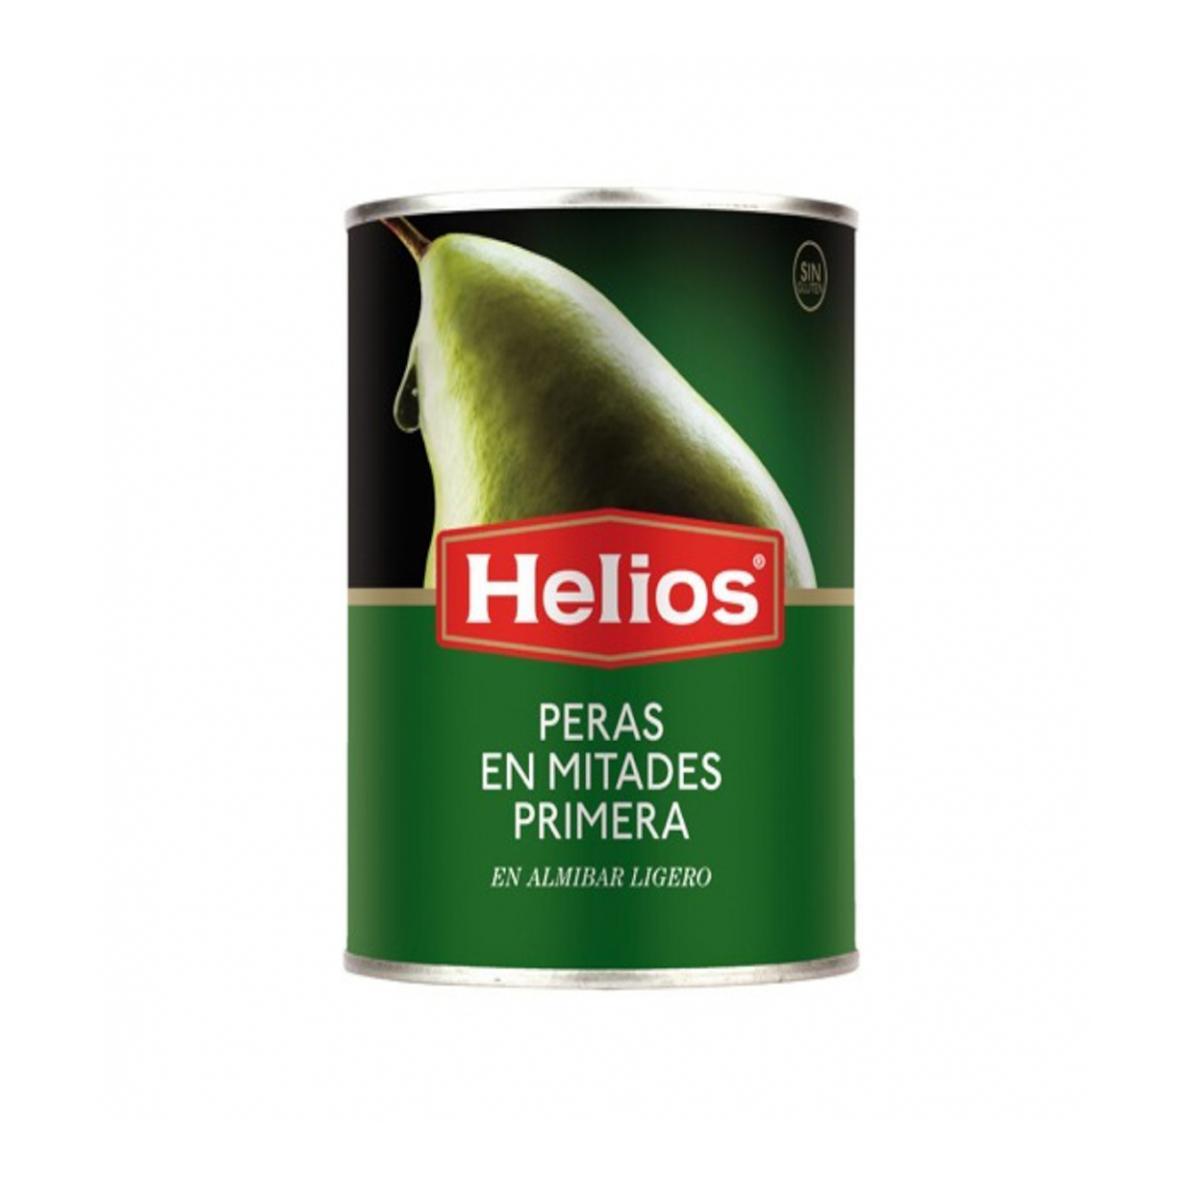 Peras en mitades en almíbar ligero Helios (420 / 14.80 oz)